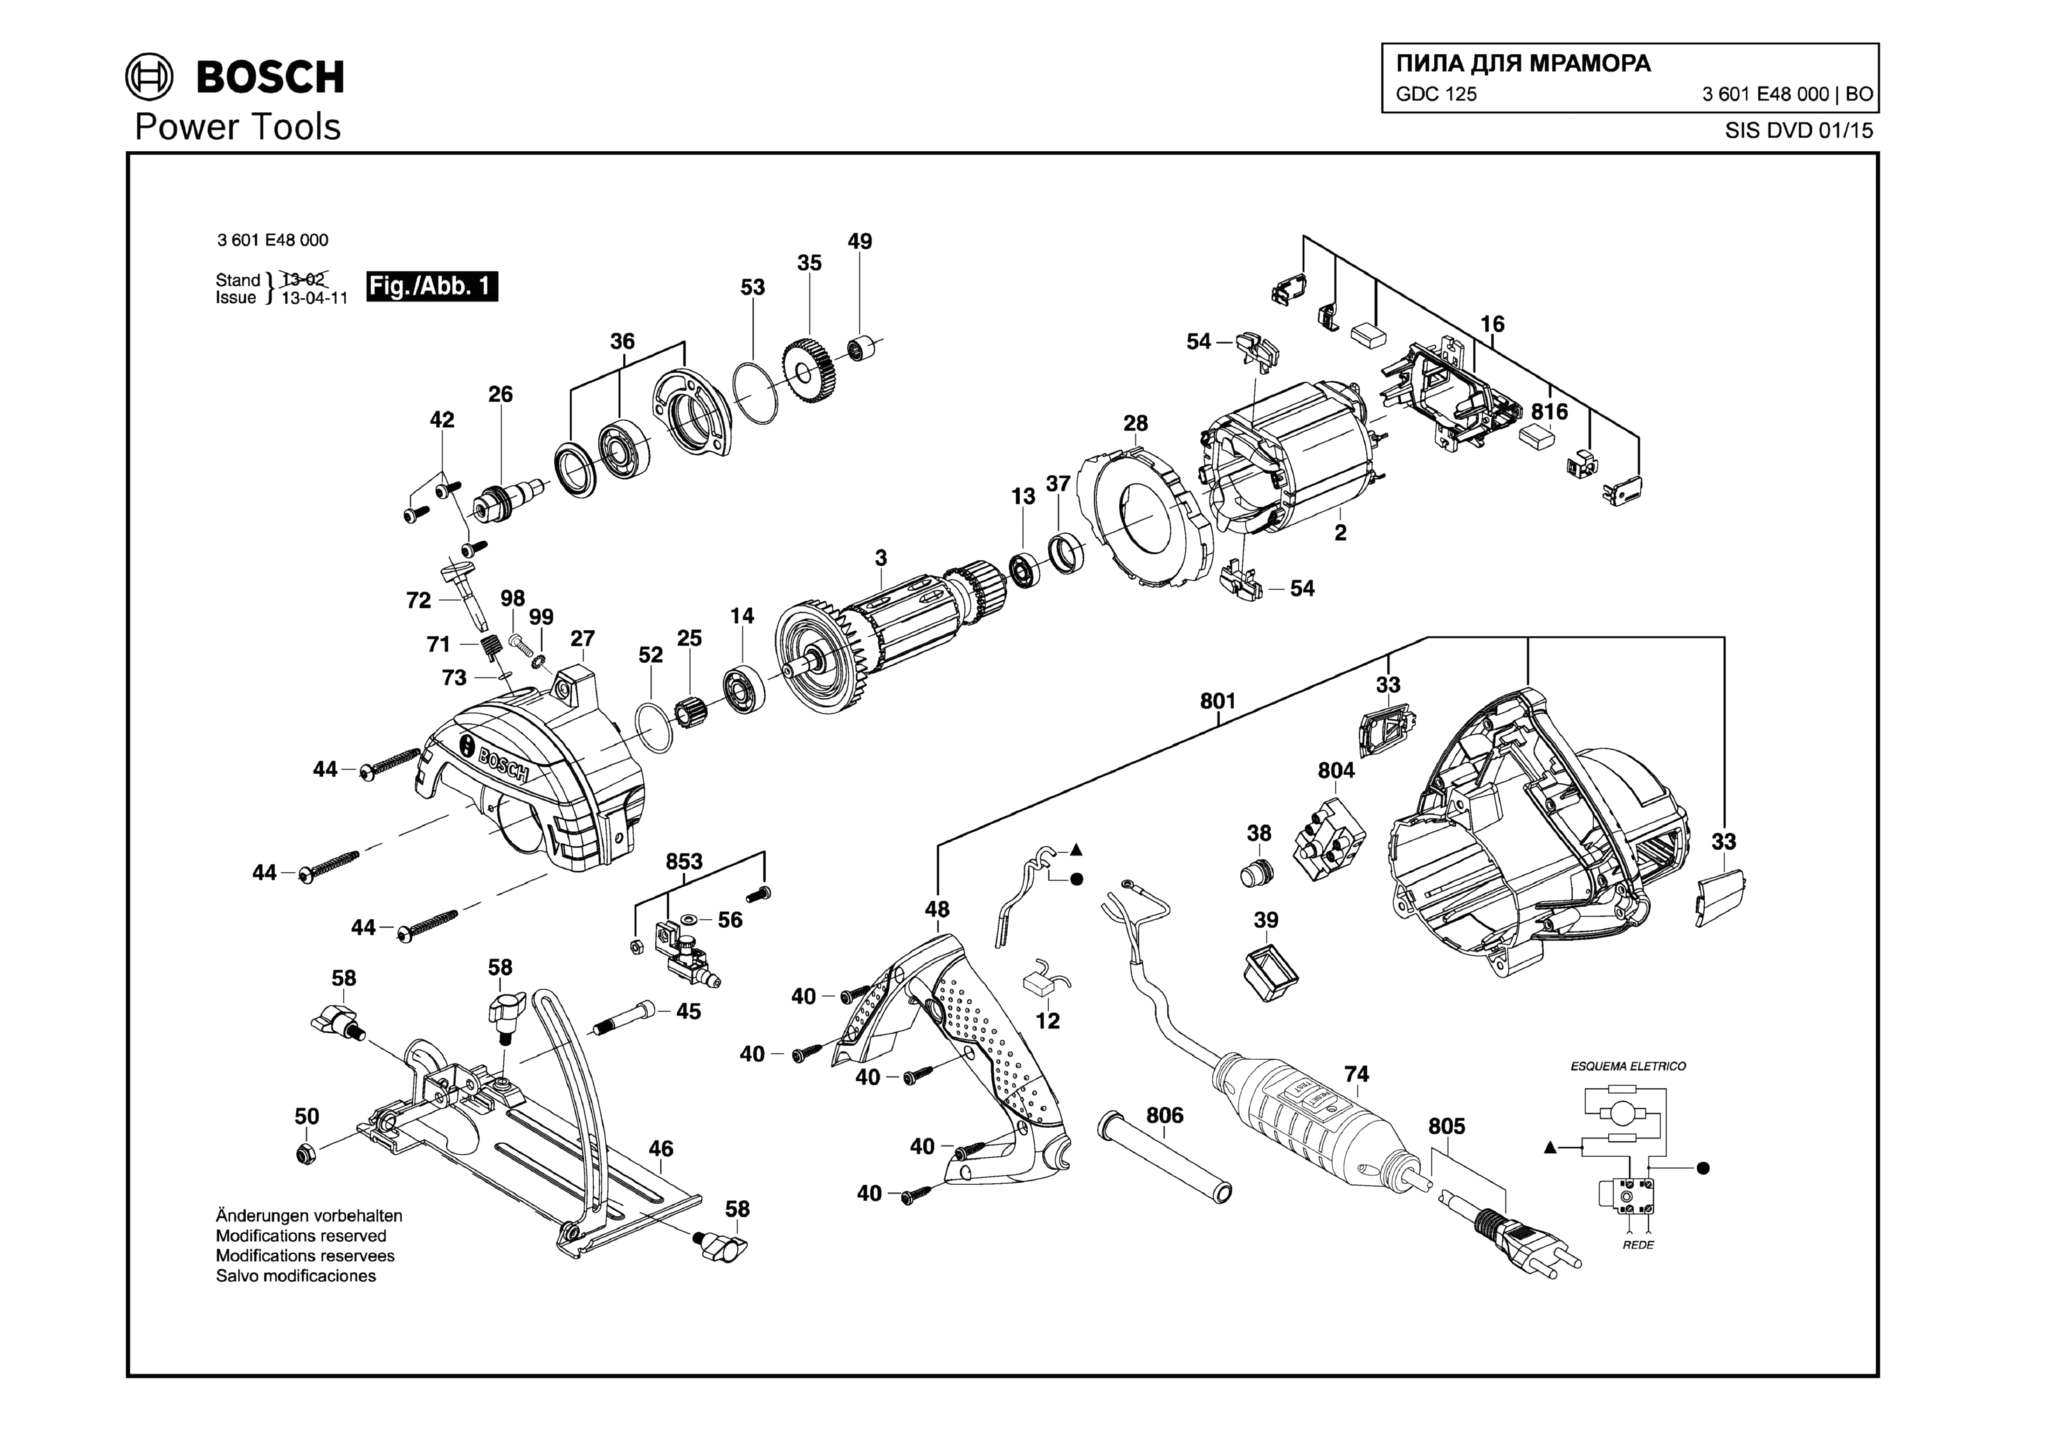 Запчасти, схема и деталировка Bosch GDC 125 (ТИП 3601E48000)